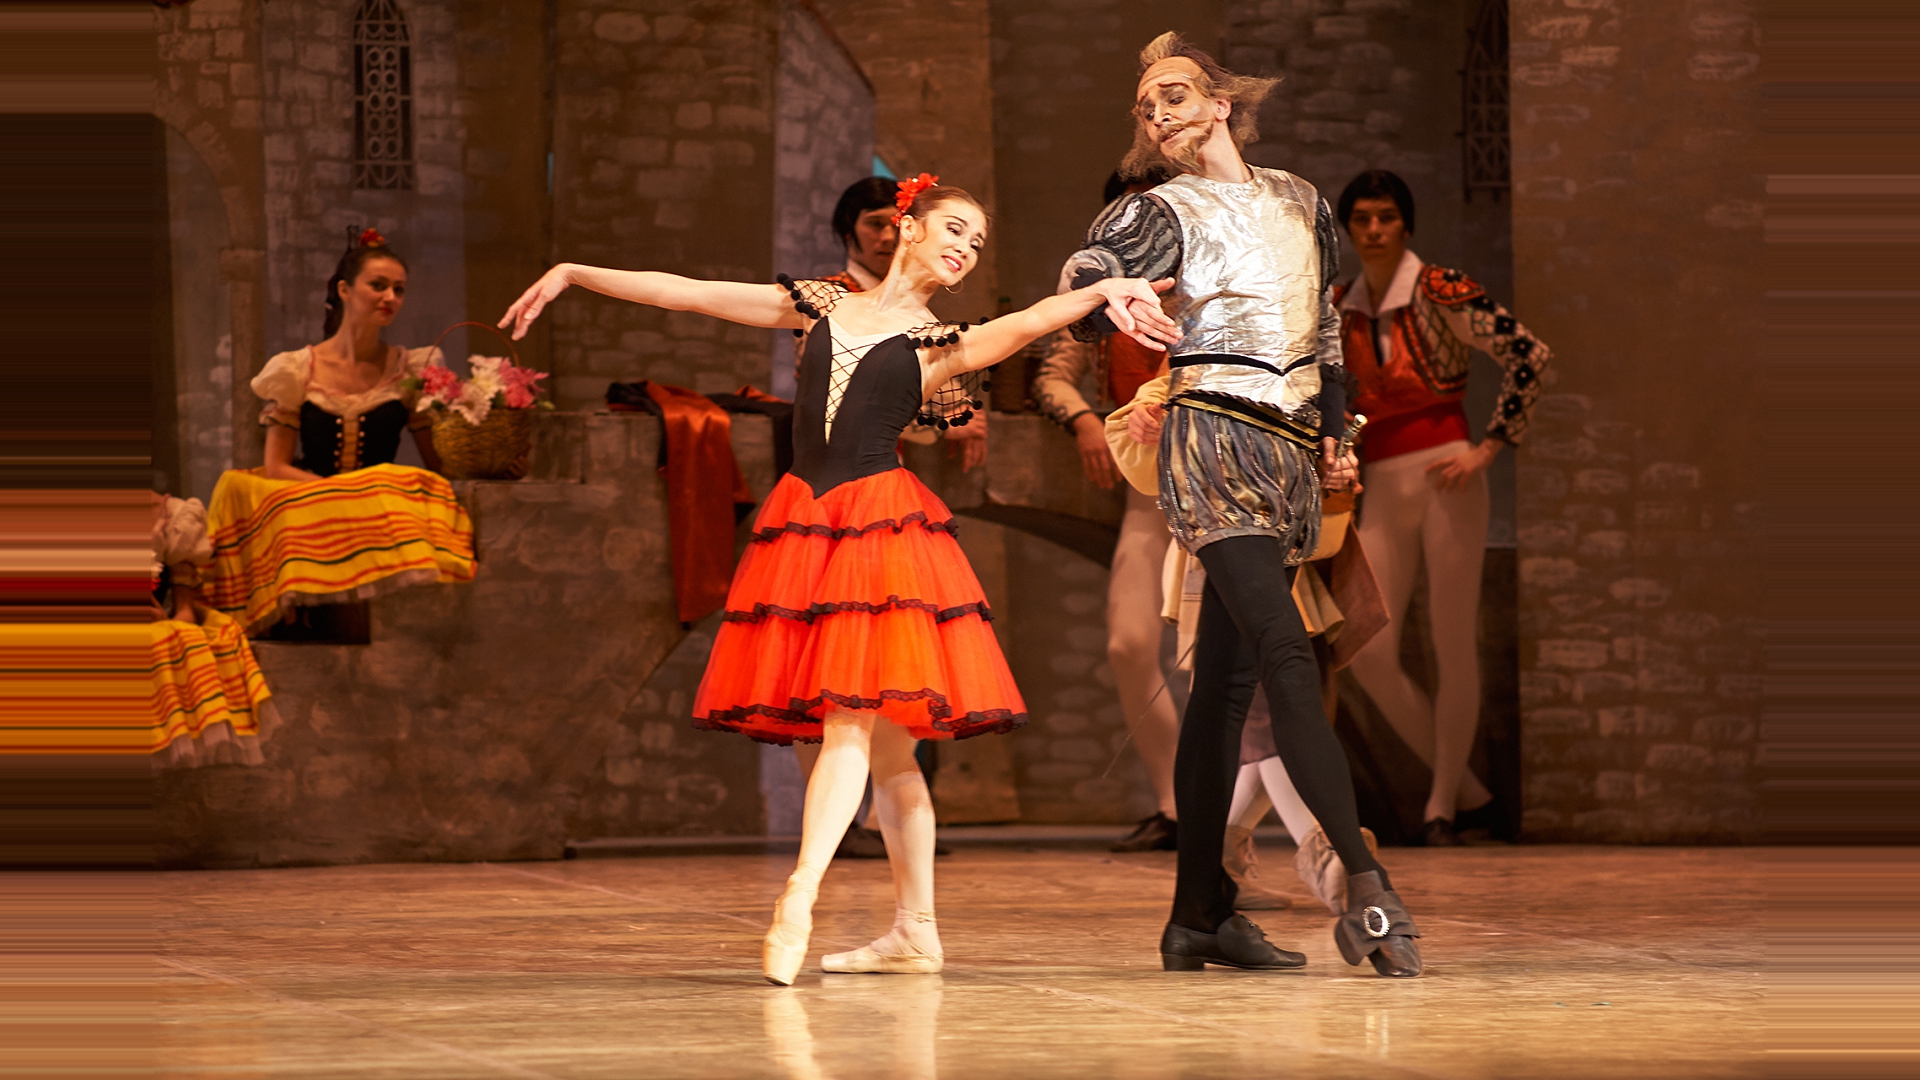 Il balletto “Don Quixote” al Carlo Felice dal 14 al 17 giugno